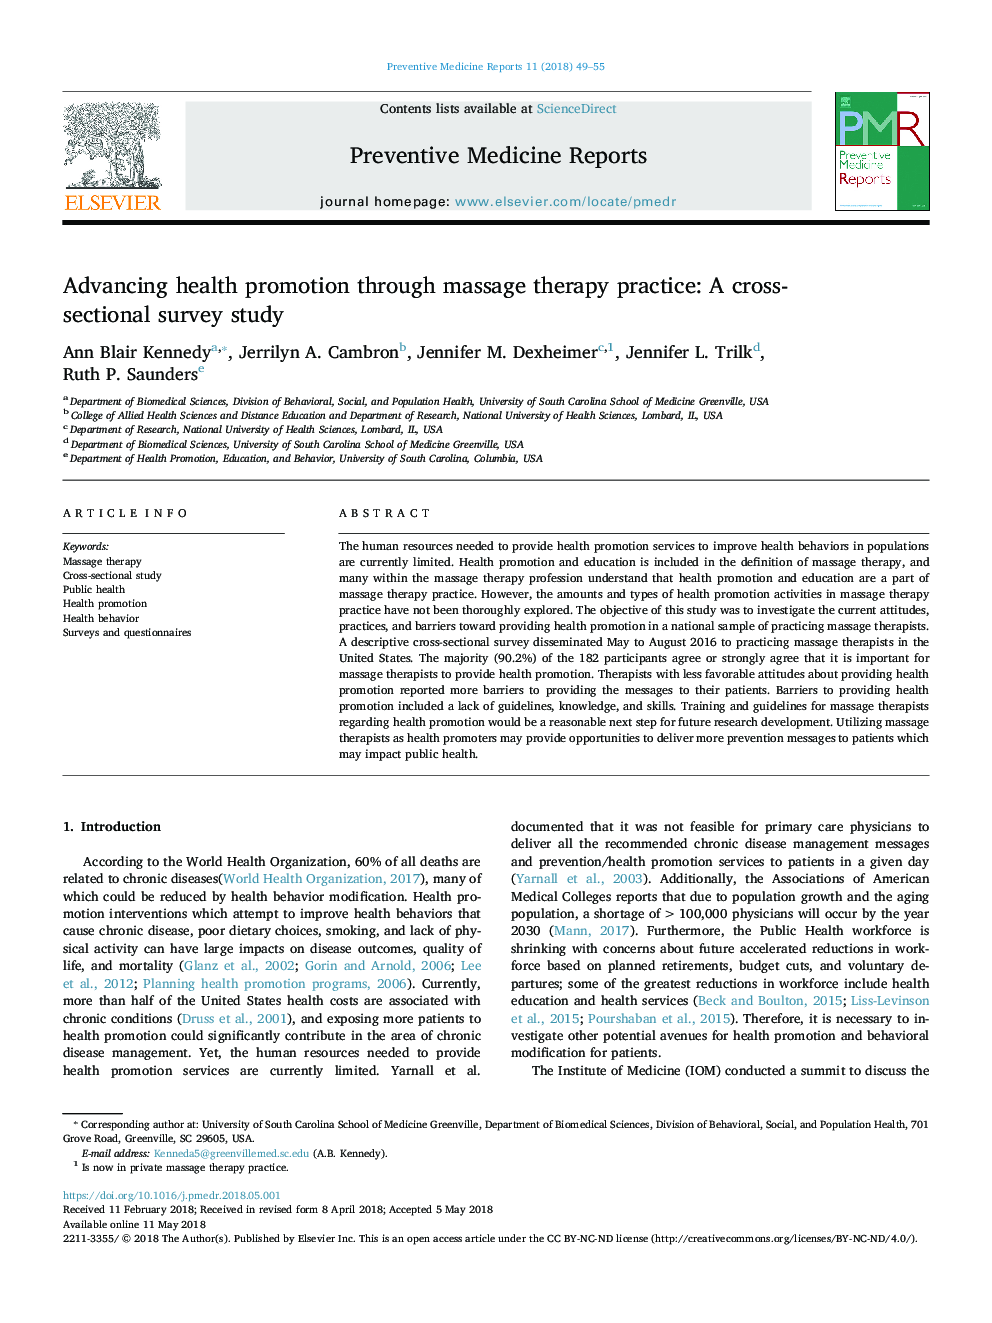 پیشگیری از ارتقاء سلامت از طریق روش ماساژ درمانی: یک مطالعه مقطعی و مقطعی 